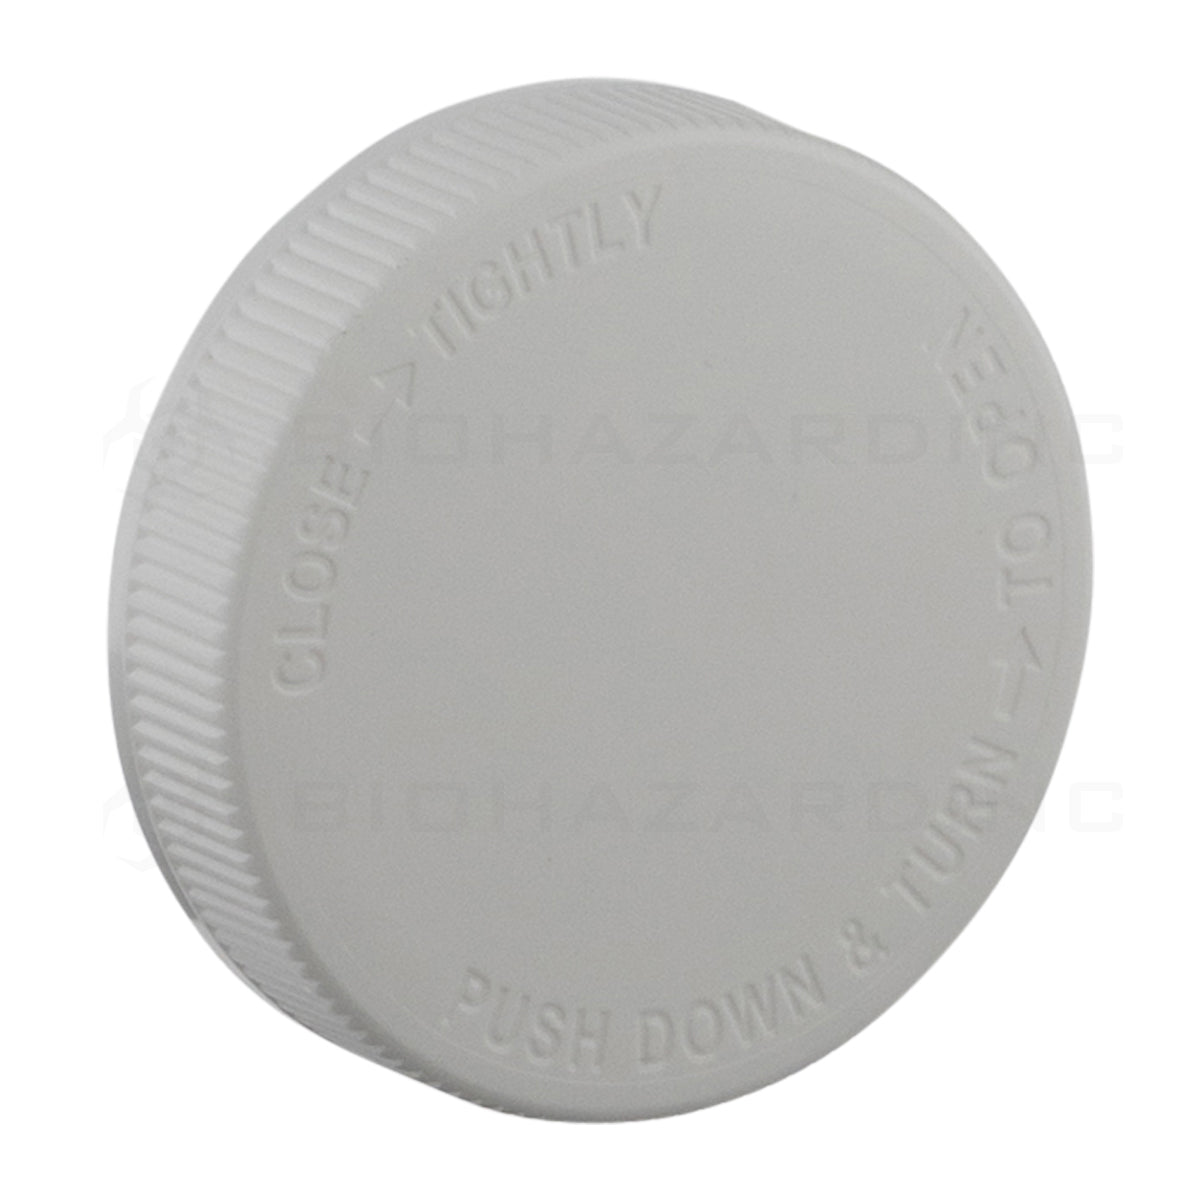 Child Resistant | Plastic Cap w/ Debossed Text | 70mm - White Child Resistant Cap Biohazard Inc   